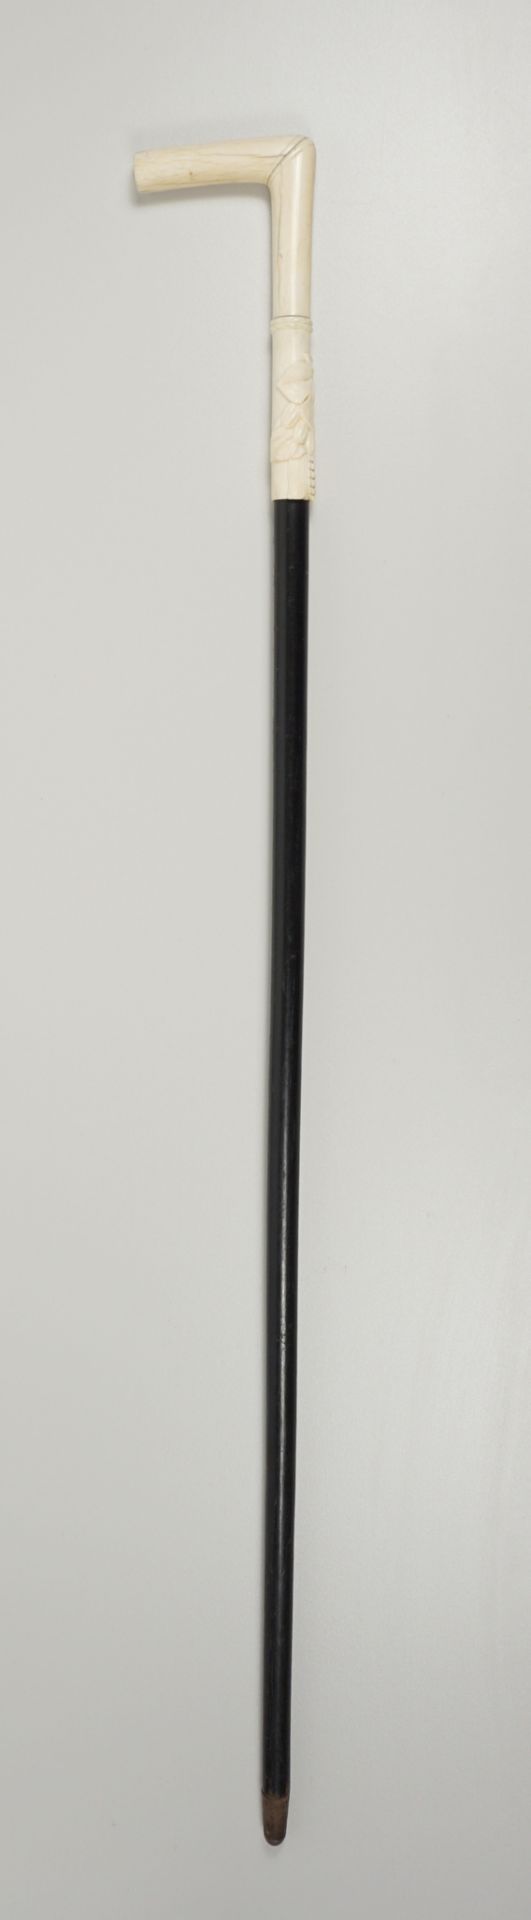 Gehstock mit Griff aus Bein mit Früchterelief, um 1920 - Image 2 of 2